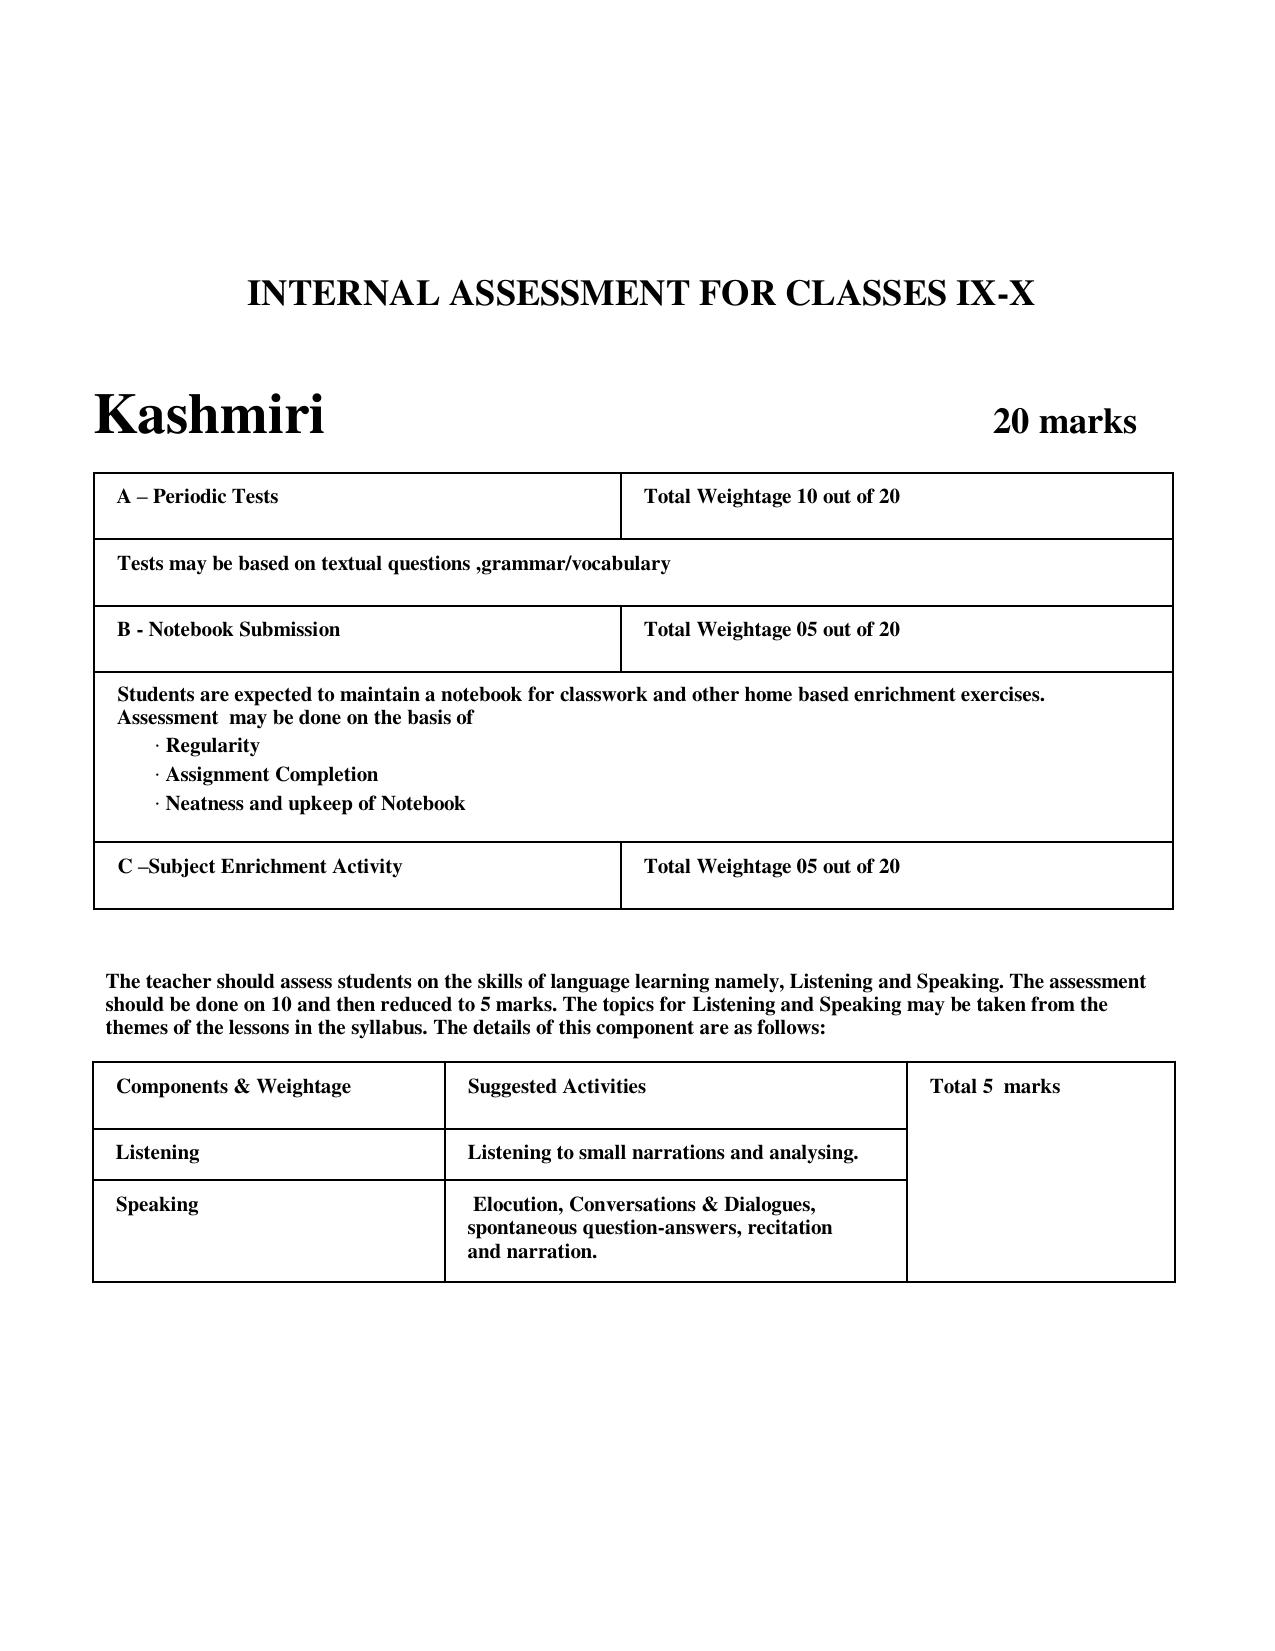 CBSE Class 9 & 10 Syllabus 2022-23 - Kashmiri - Page 5